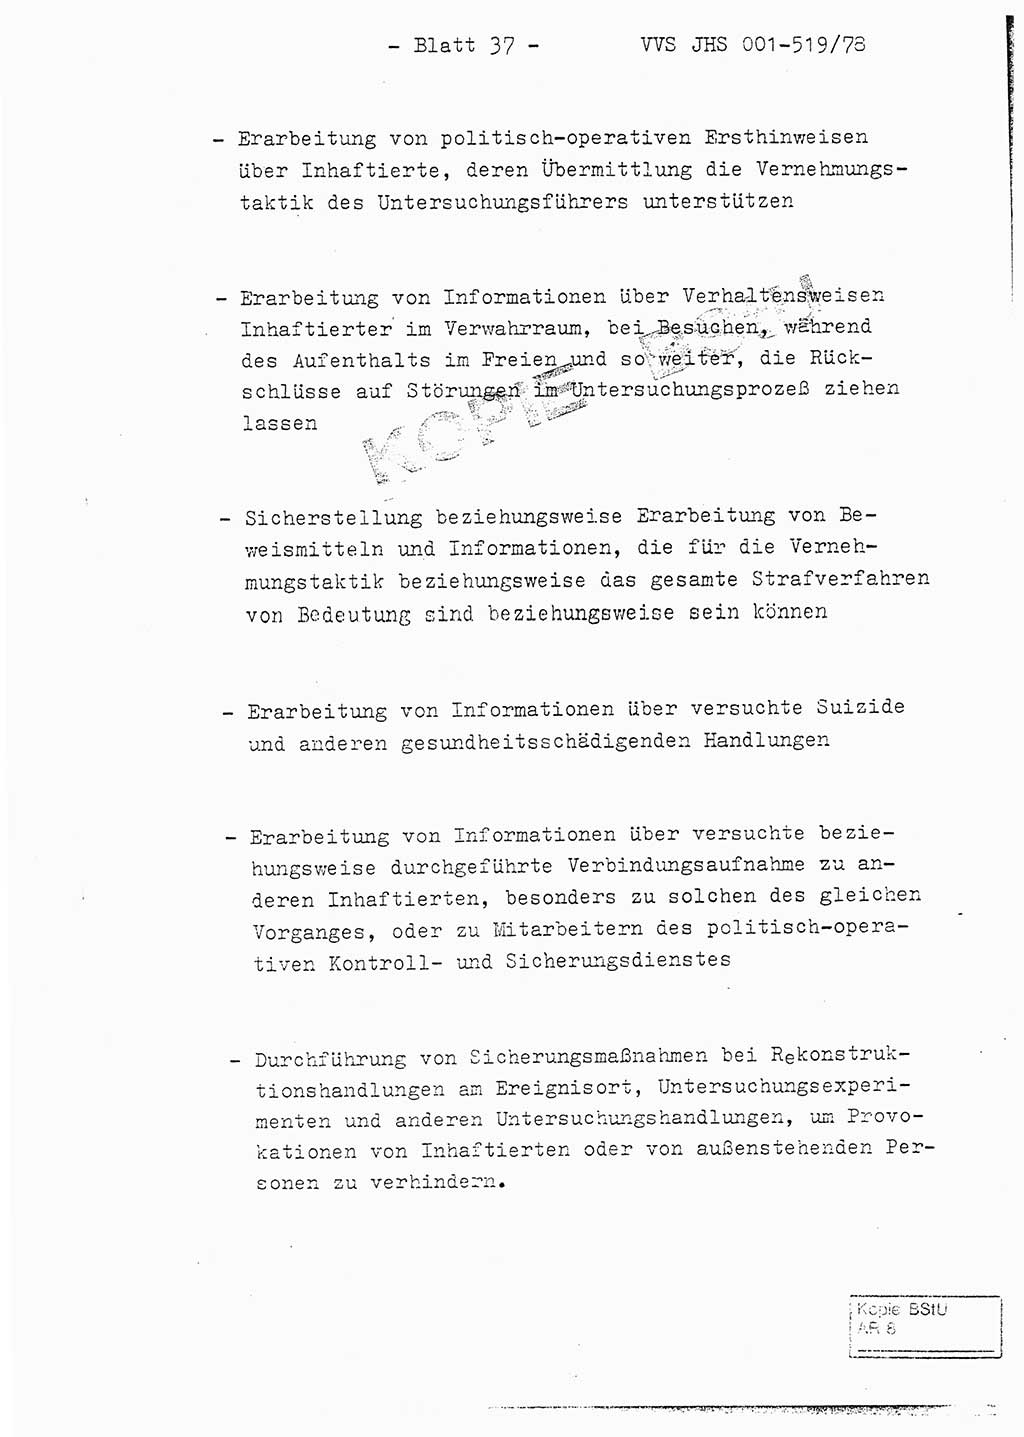 Fachschulabschlußarbeit Hauptmann Alfons Lützelberger (Abt. ⅩⅣ), Ministerium für Staatssicherheit (MfS) [Deutsche Demokratische Republik (DDR)], Juristische Hochschule (JHS), Vertrauliche Verschlußsache (VVS) 001-519/78, Potsdam 1978, Blatt 37 (FS-Abschl.-Arb. MfS DDR JHS VVS 001-519/78 1978, Bl. 37)